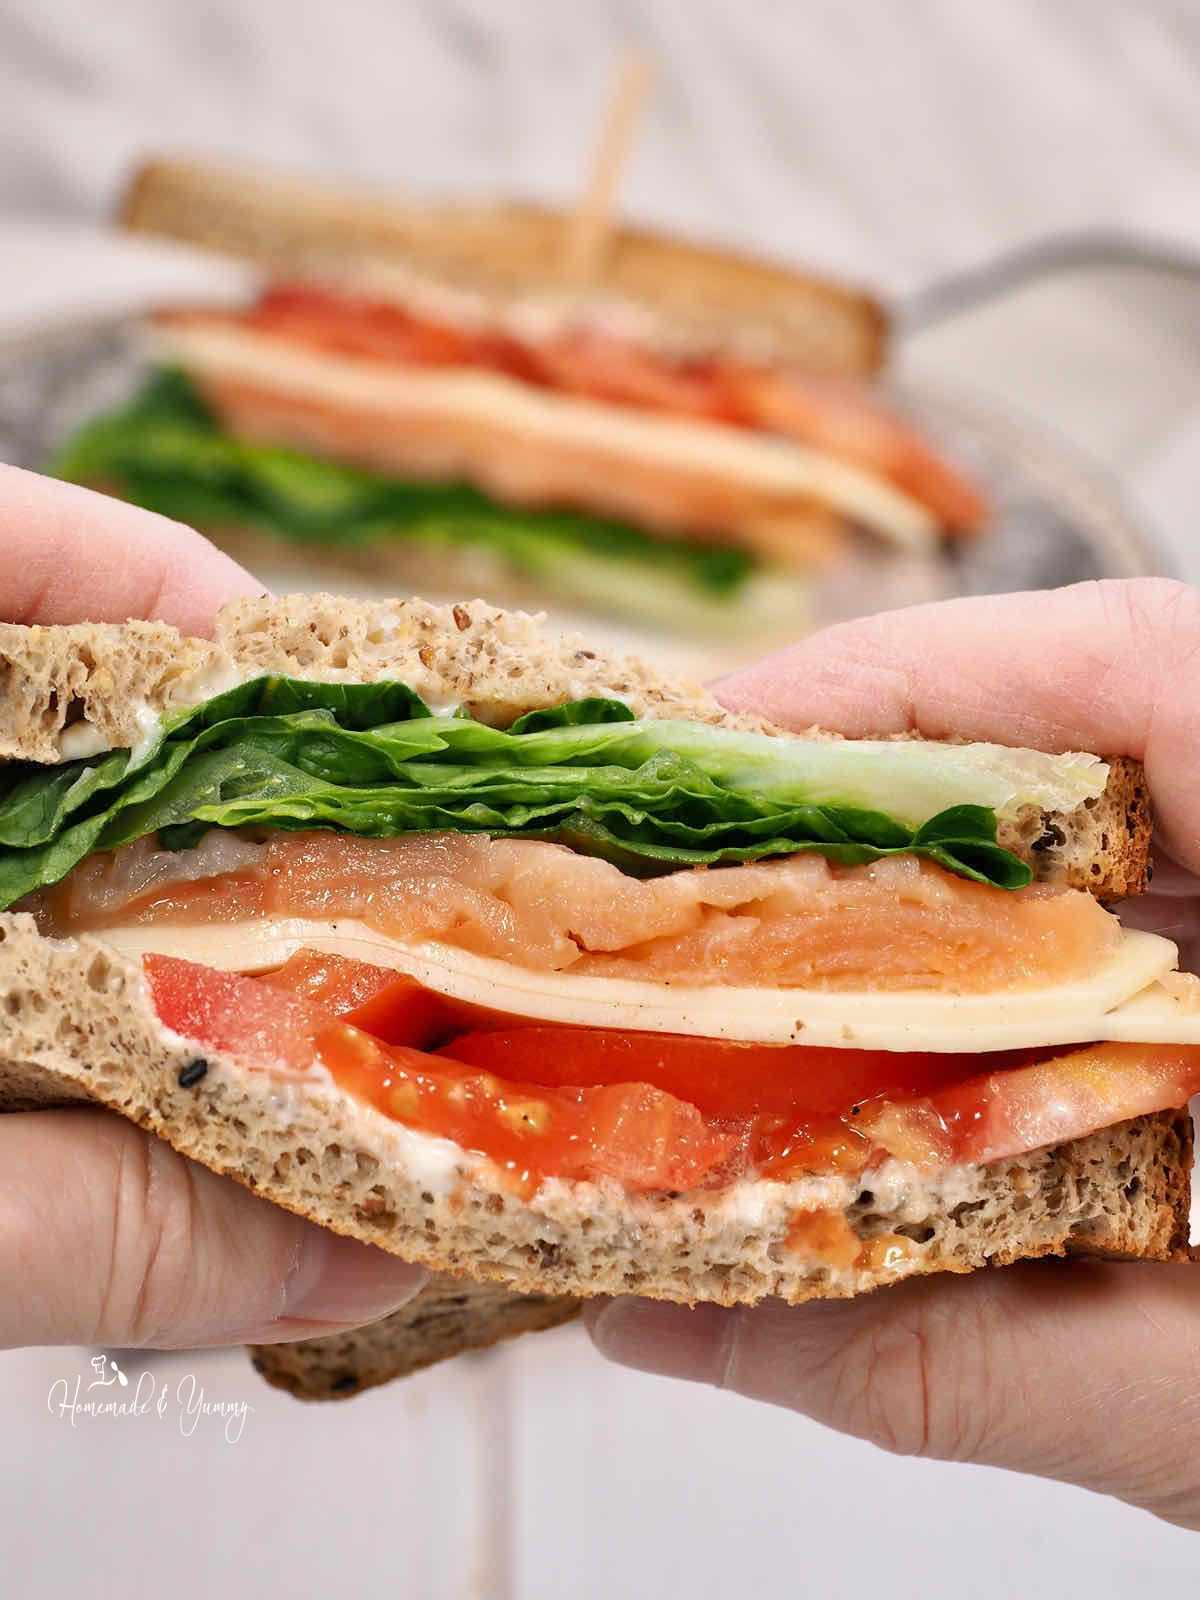 A hand holding a sandwich.